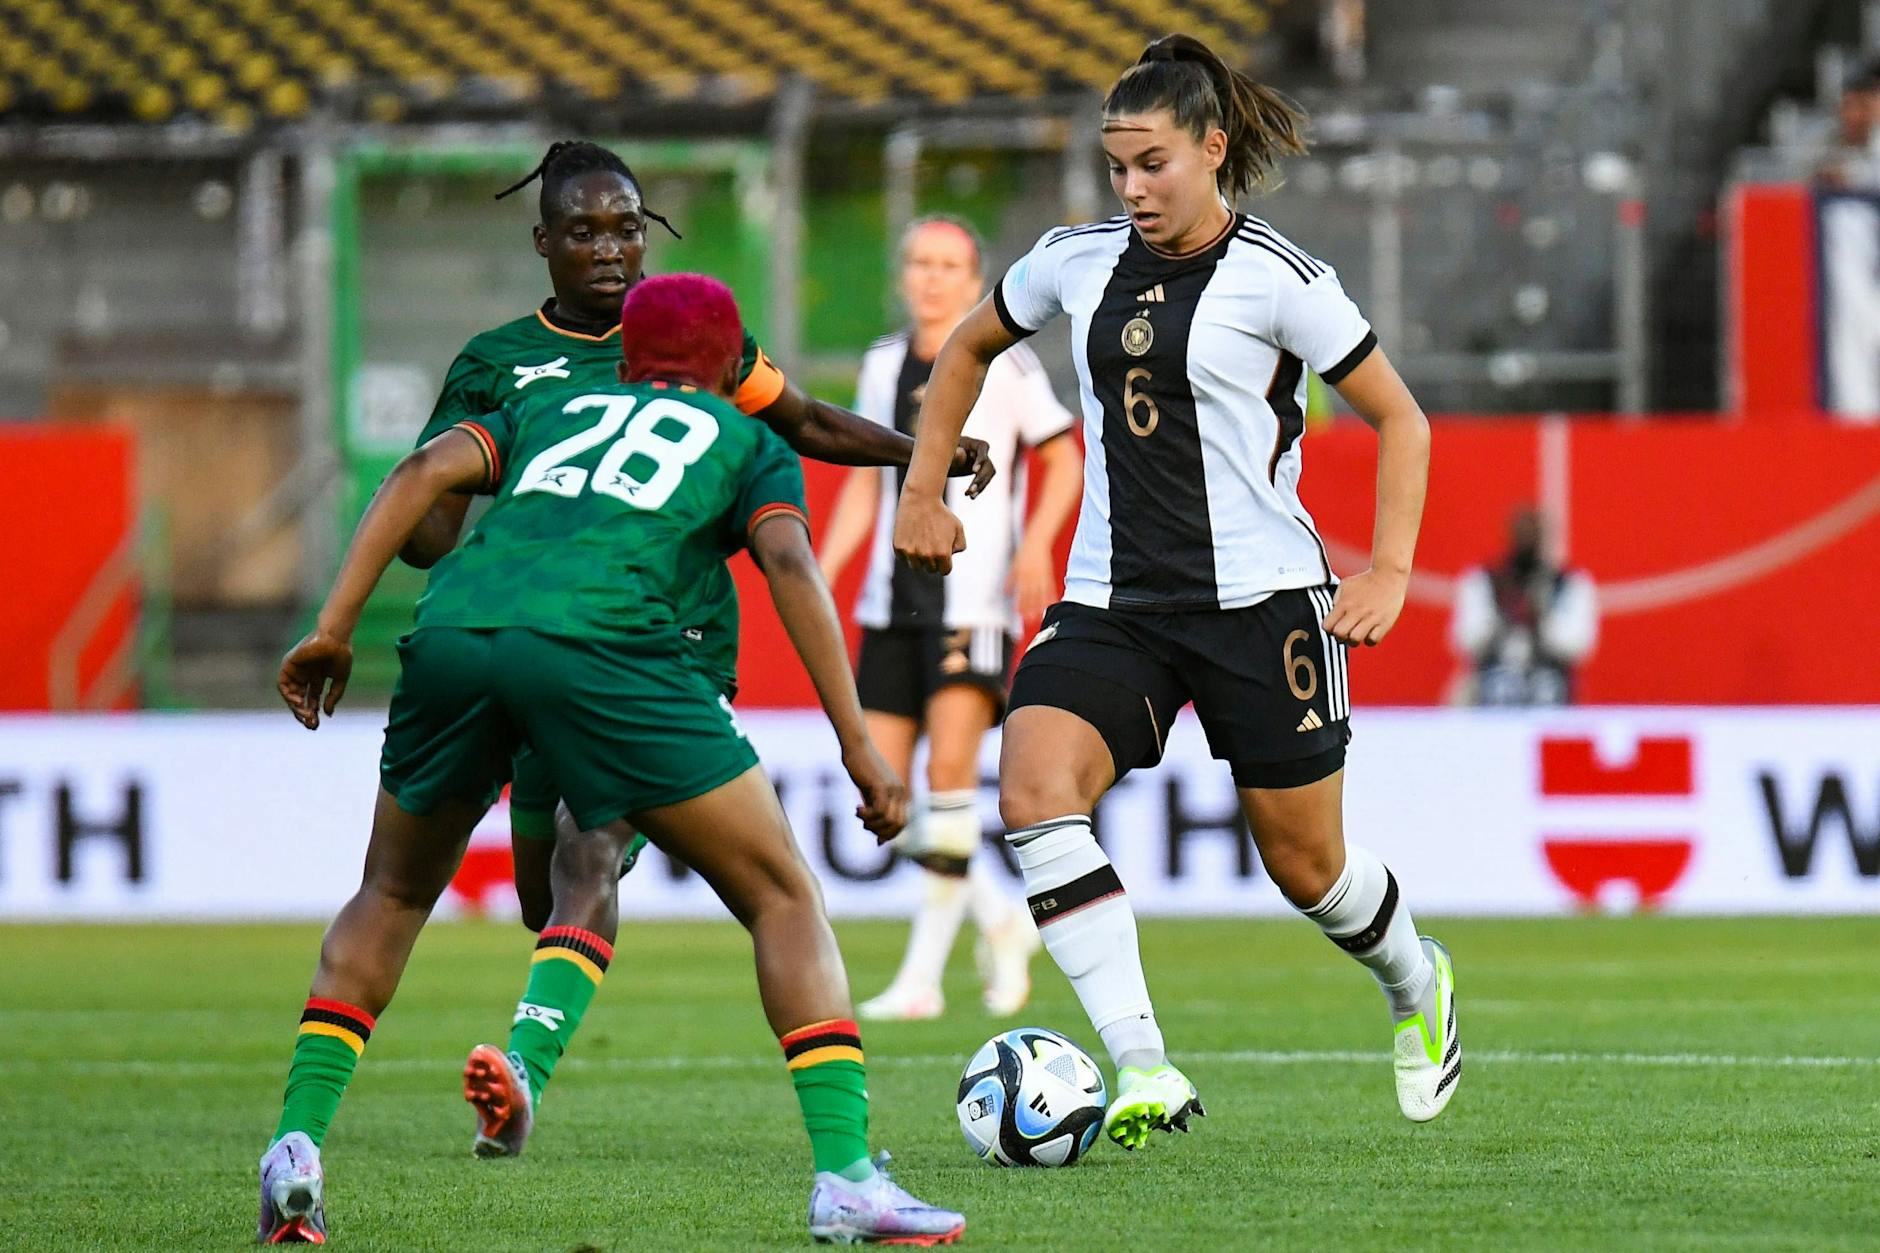 &nbsp;Länderspiel Deutschland - Sambia: Lena Sophie Oberdorf am Ball gegen Susan Banda und Barbra Banda.&nbsp;&nbsp;